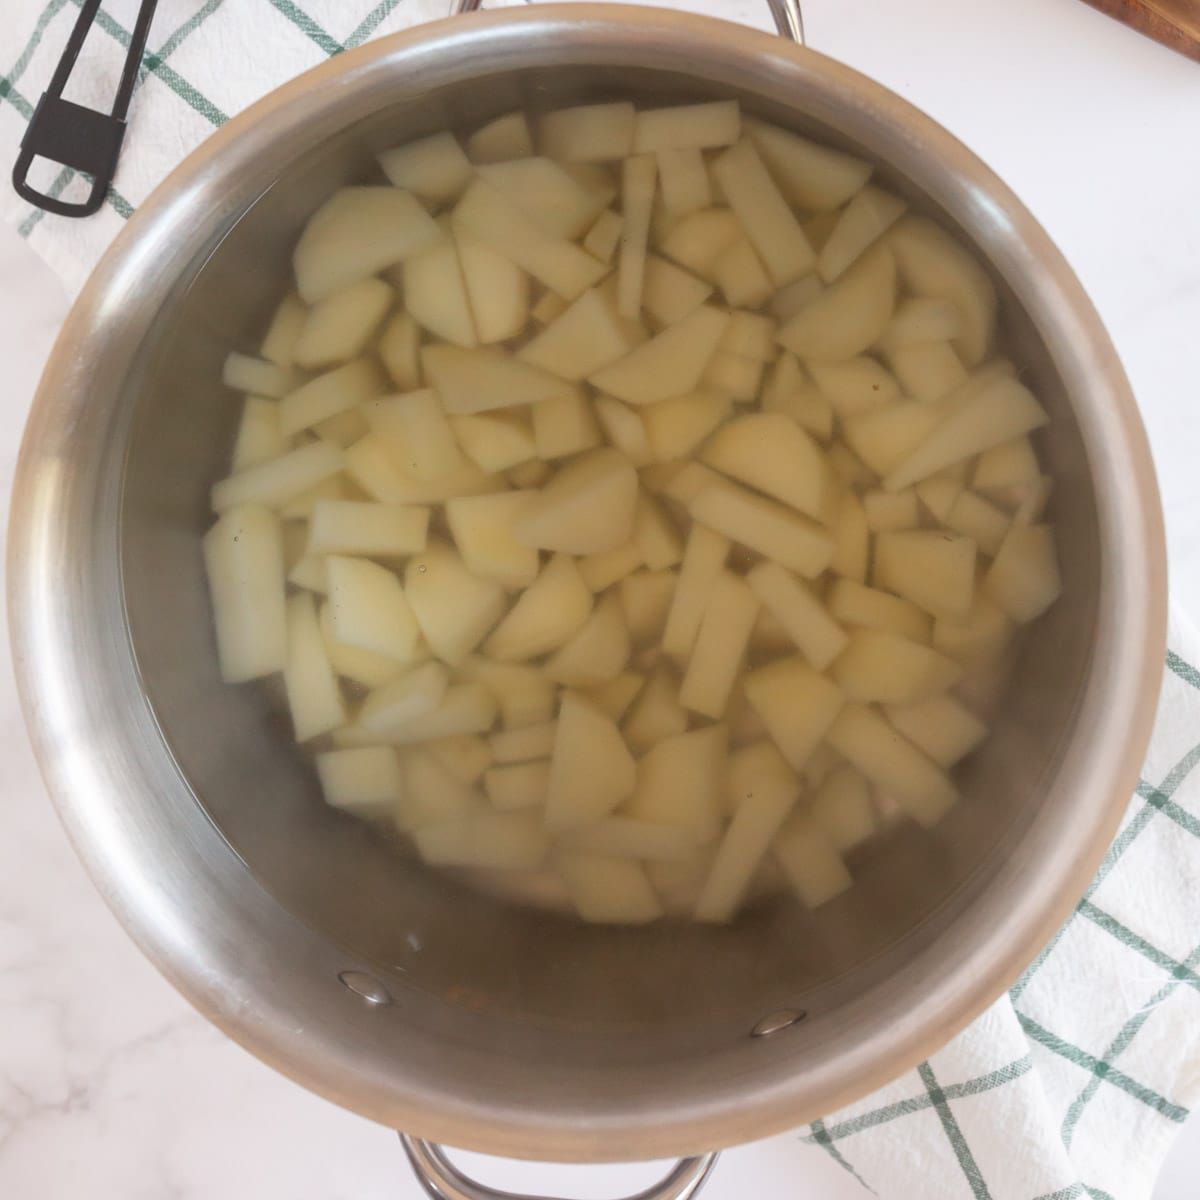 Μεταλλικό δοχείο με πατάτες σε κύβους και νερό